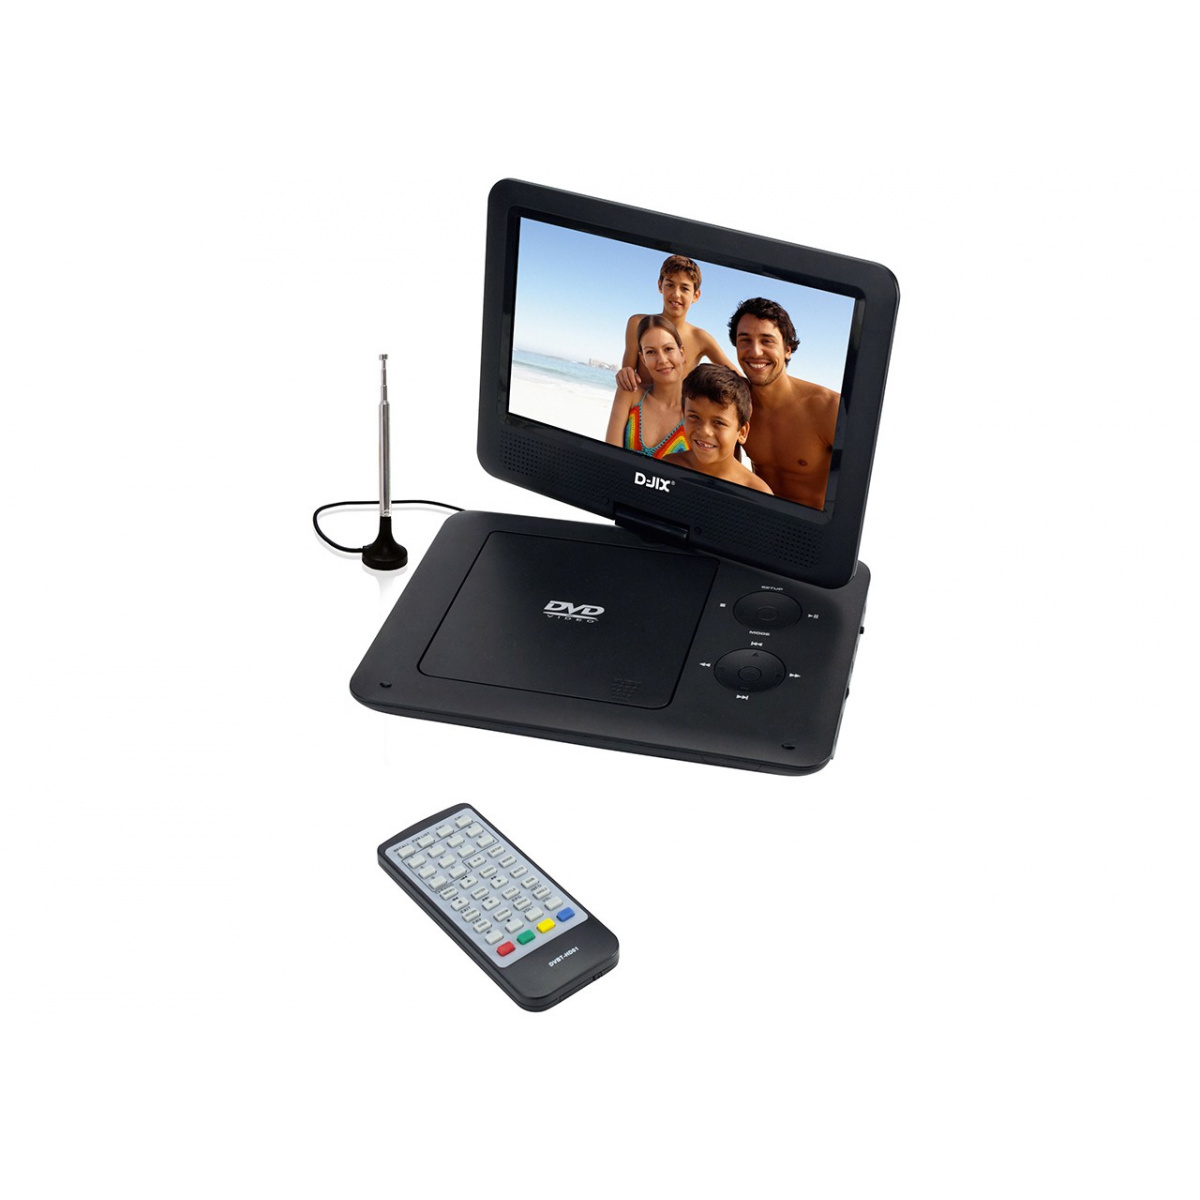 Lecteur DVD Portable de 9,8 Pouces avec écran pivotant, Moniteur LCD 16: 9  Mobile Récepteur TV FM Compatible AV/USB/SD/MS/MMC, Décodeur Dolby DTS